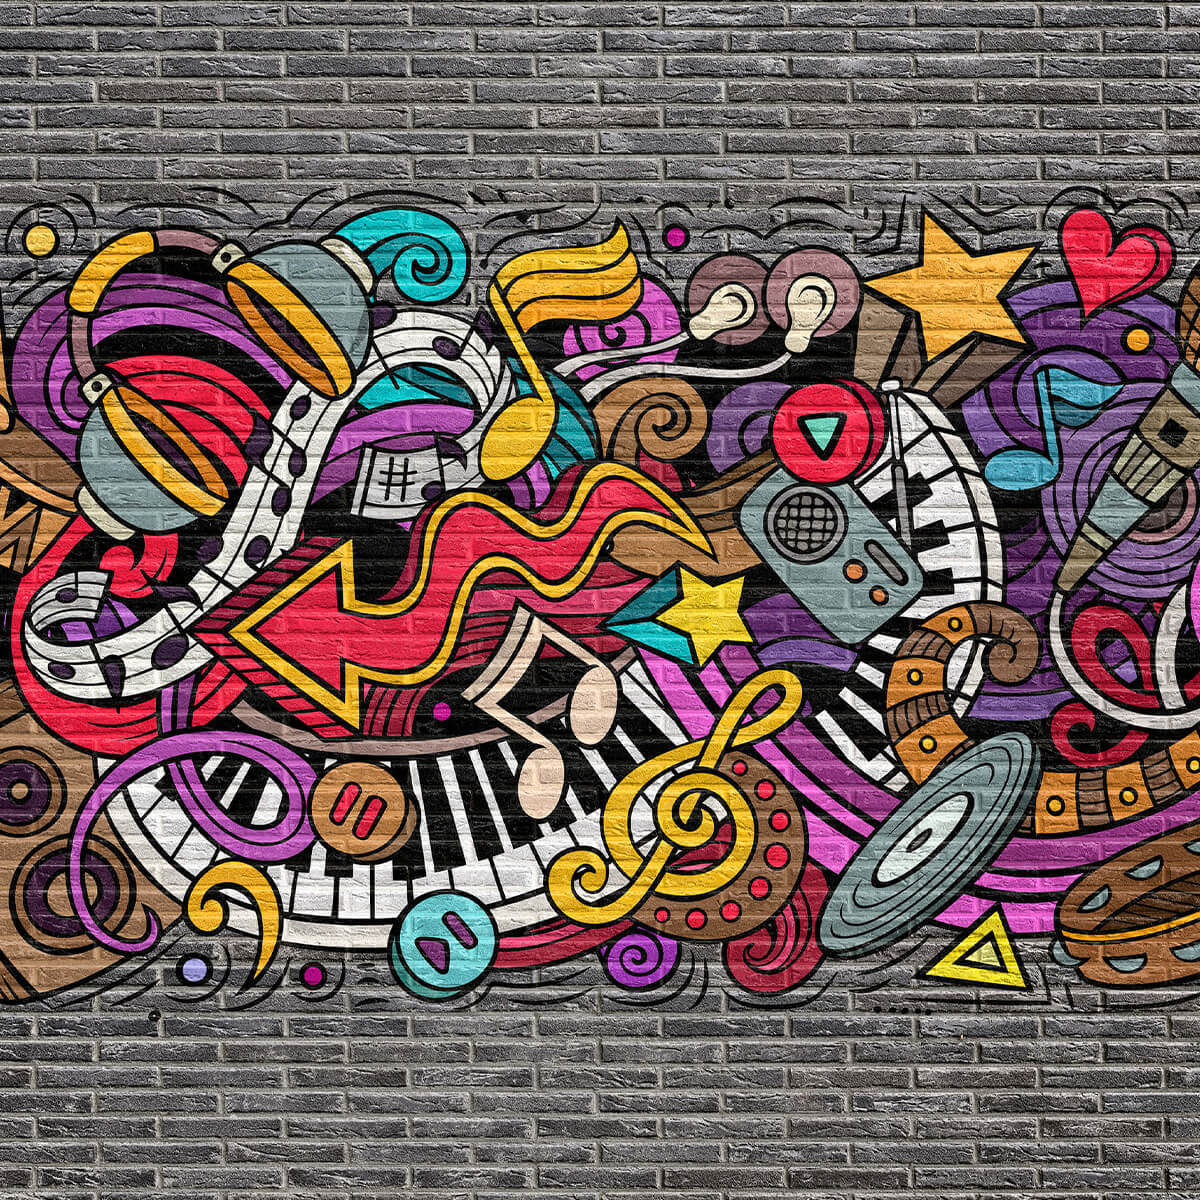 Music graffiti on brick